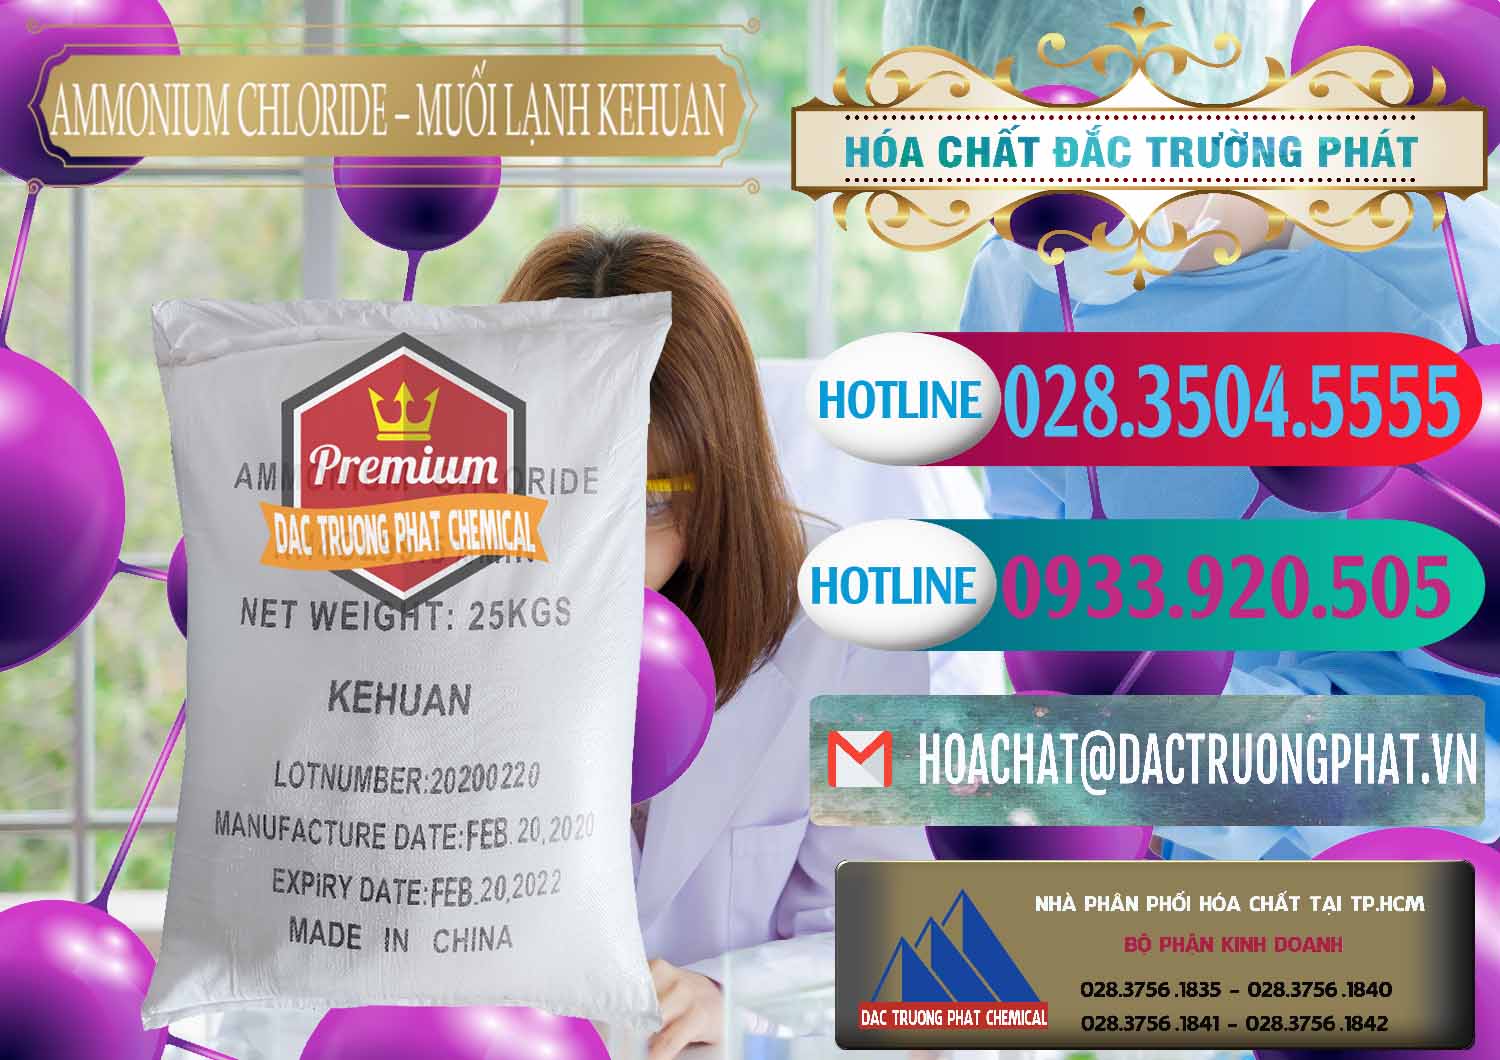 Cung cấp và bán Ammonium Chloride – NH4CL Muối Lạnh Kehuan Trung Quốc China - 0022 - Cung cấp _ kinh doanh hóa chất tại TP.HCM - truongphat.vn